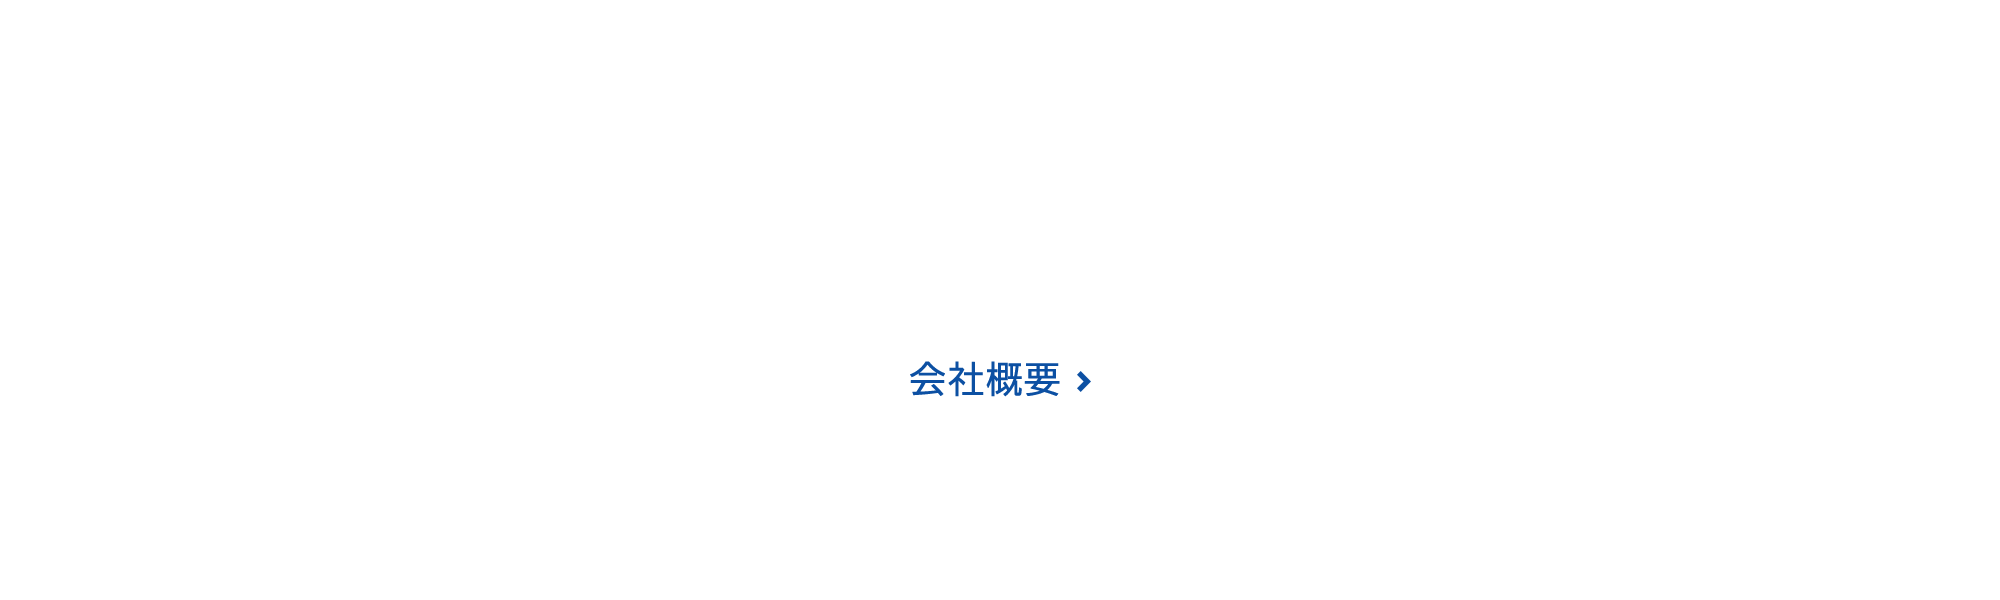 btn_company